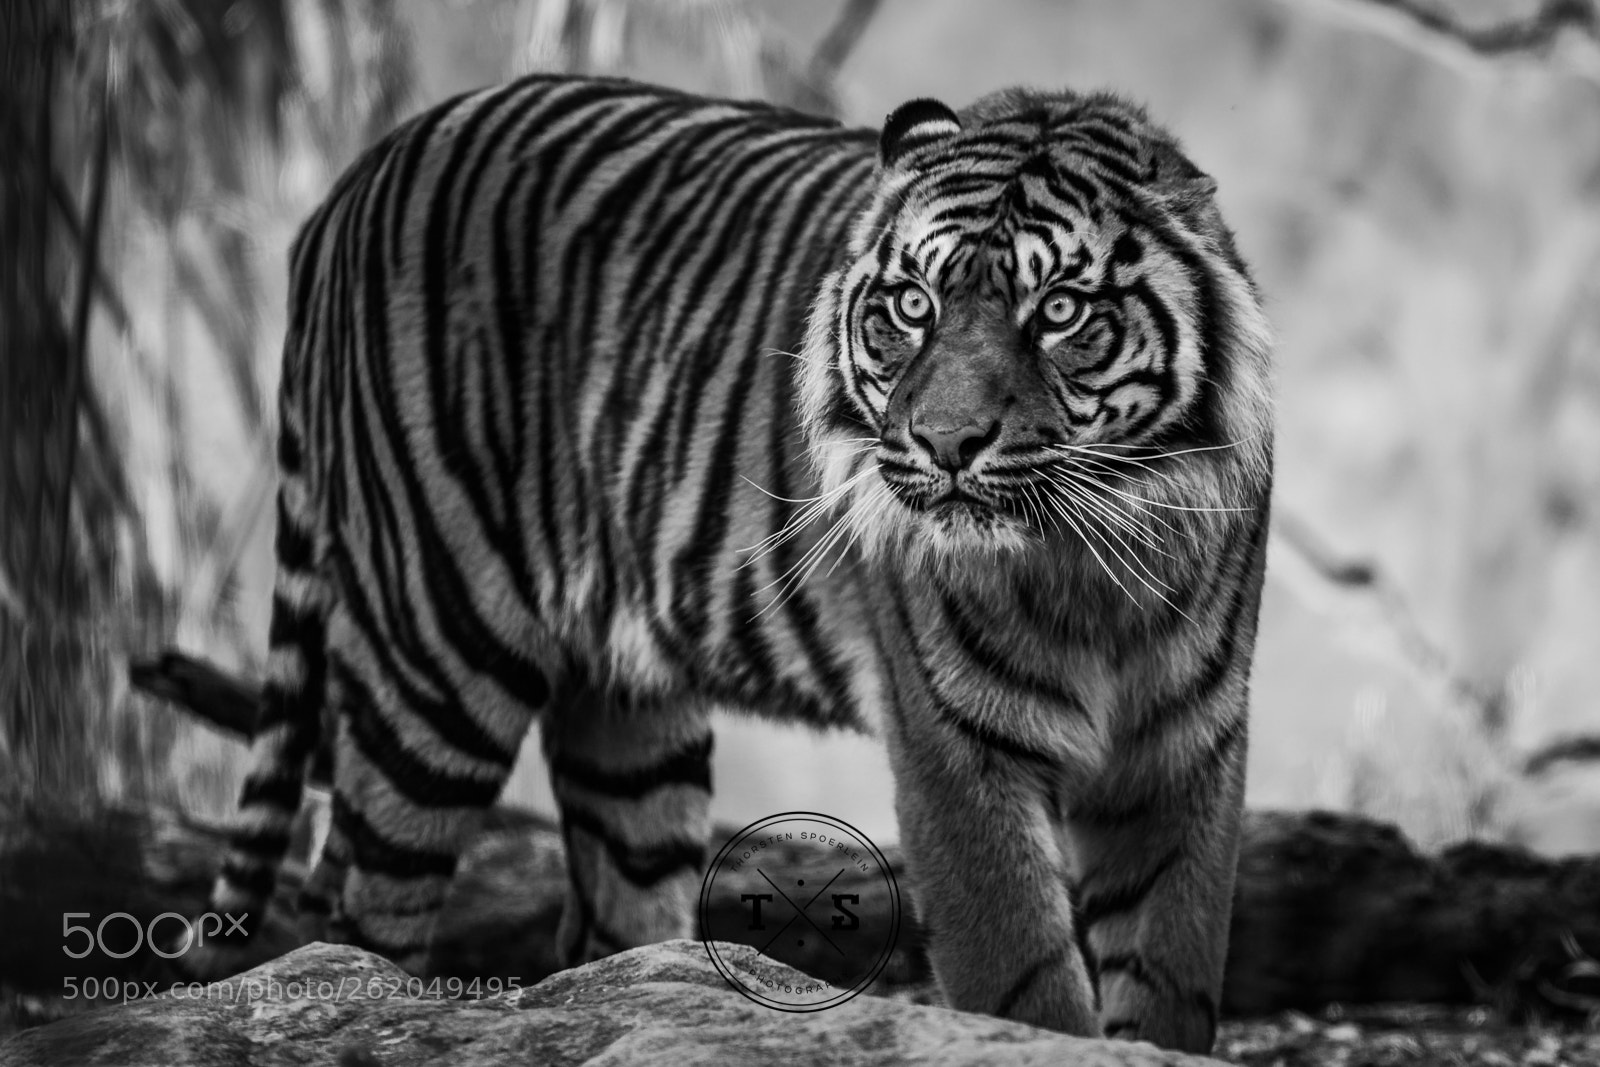 Nikon D7100 sample photo. Sumatran tiger photography